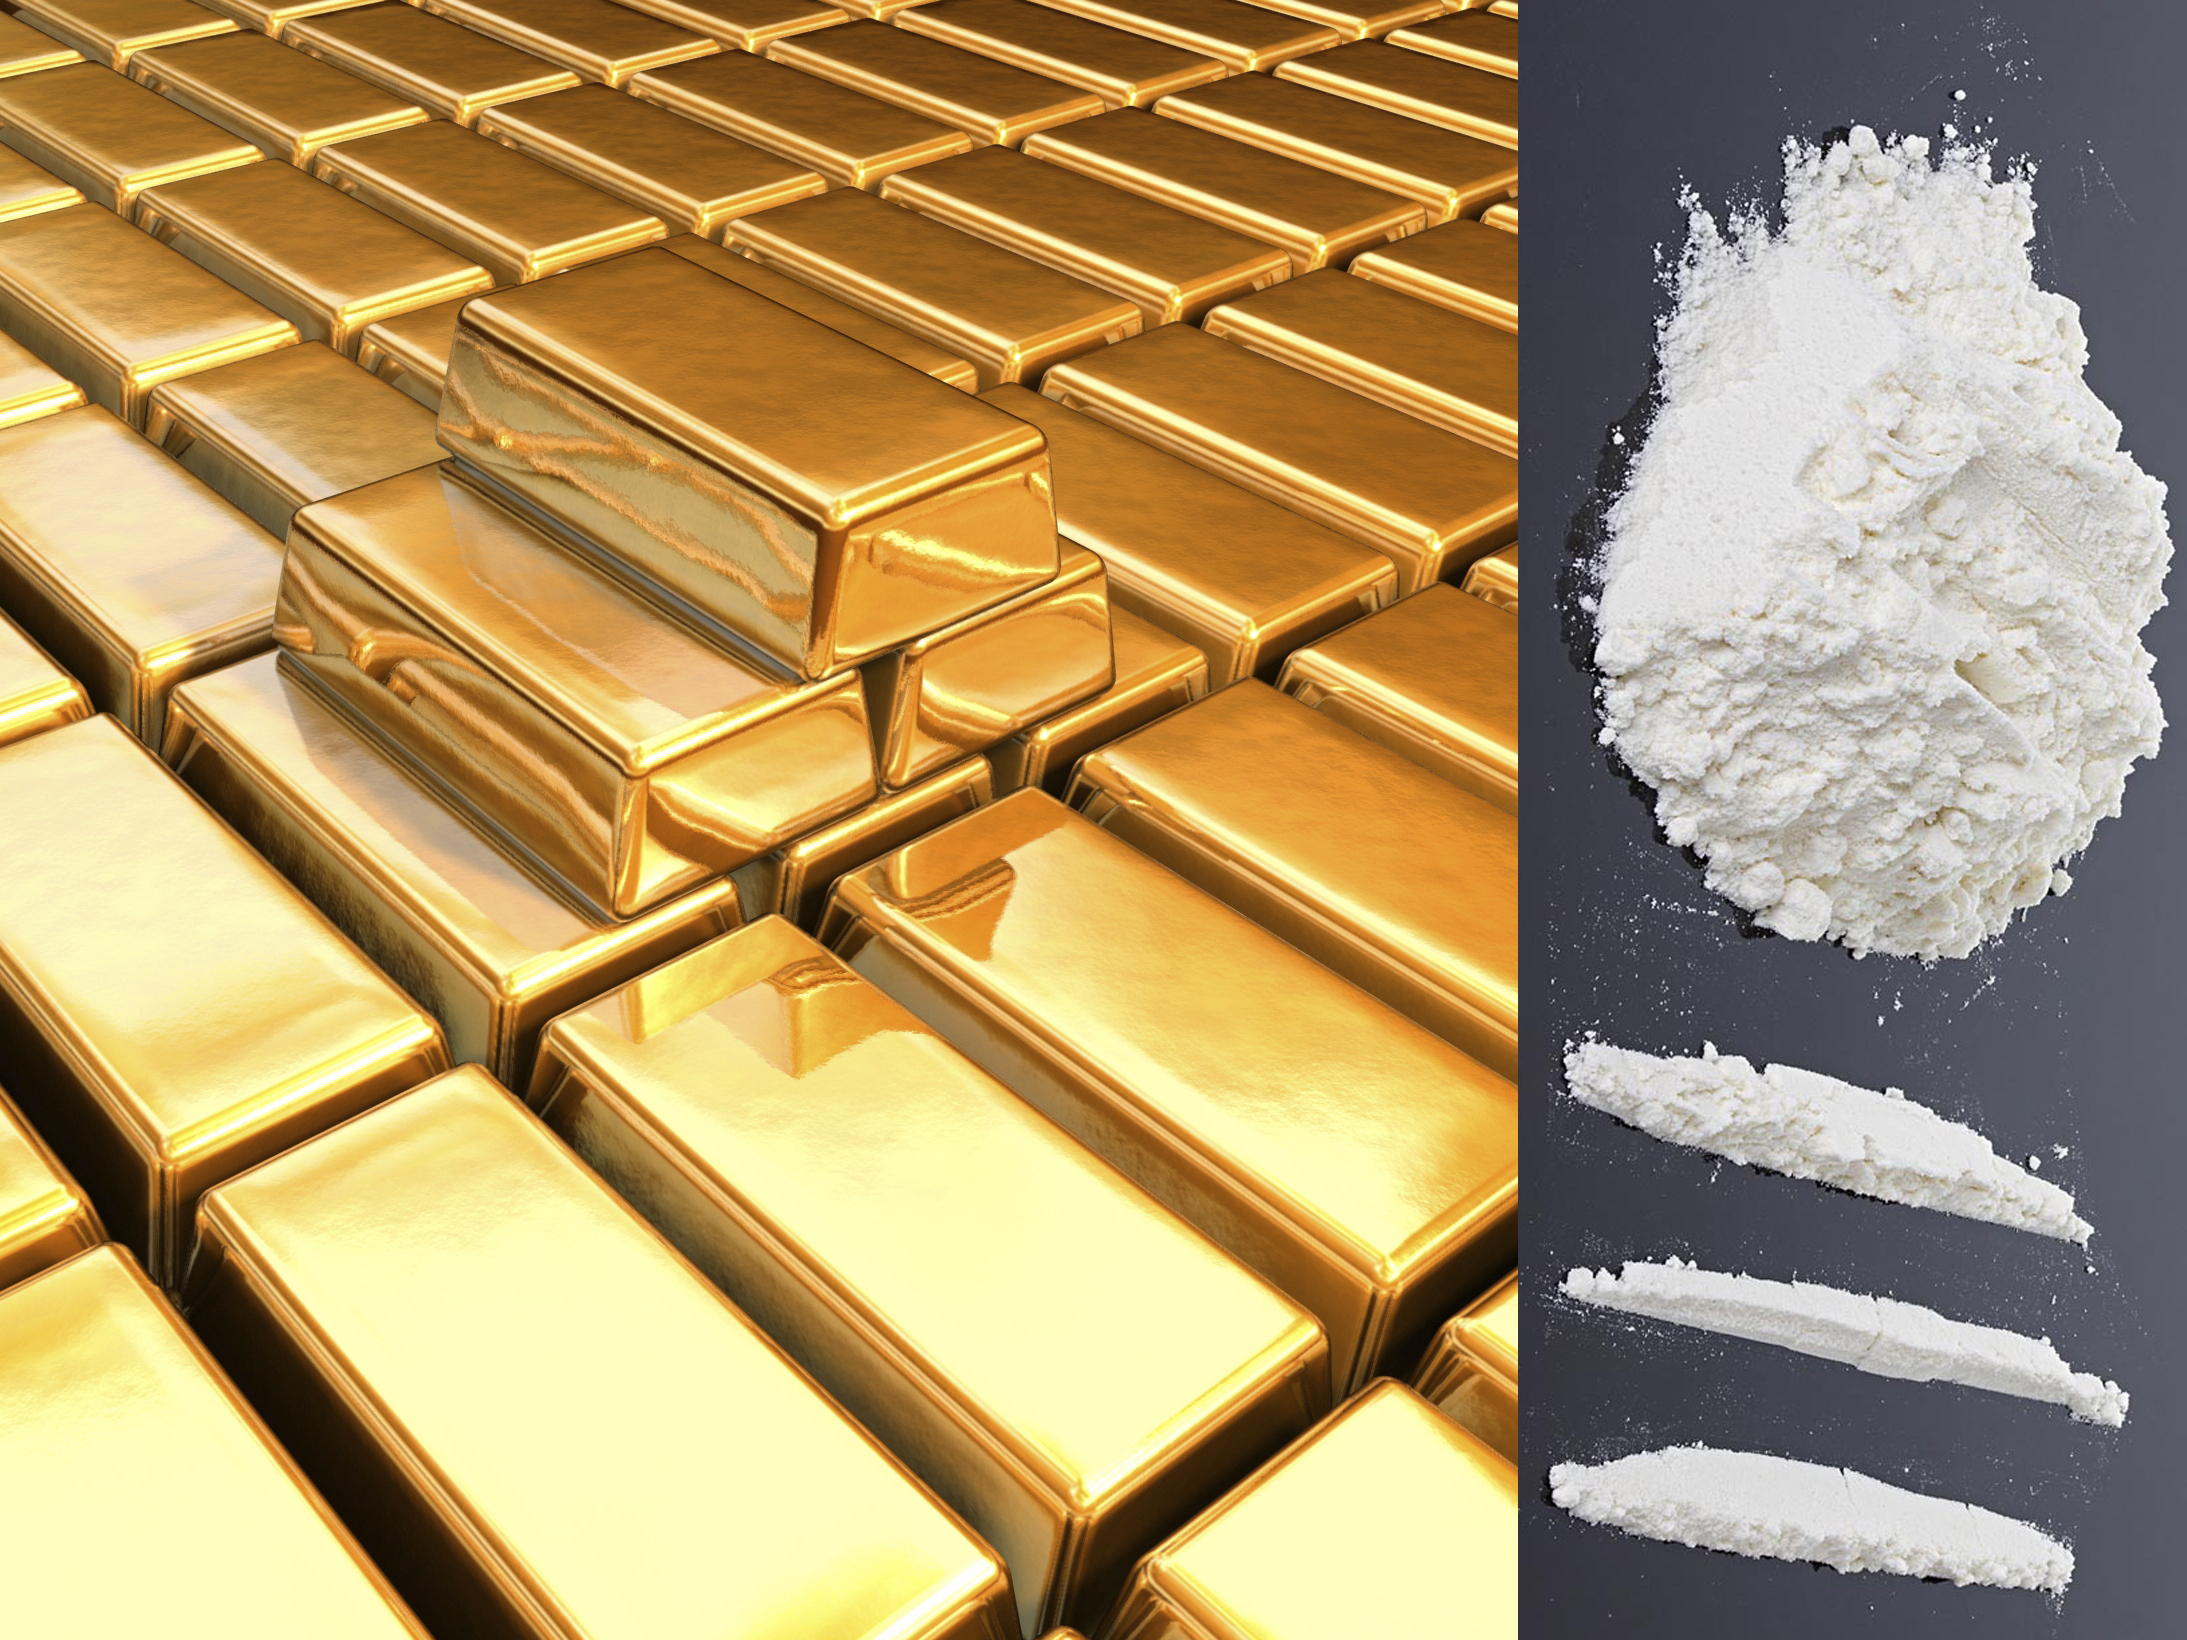 Cocaina a tonnellate lingotti d'oro e milioni in contanti